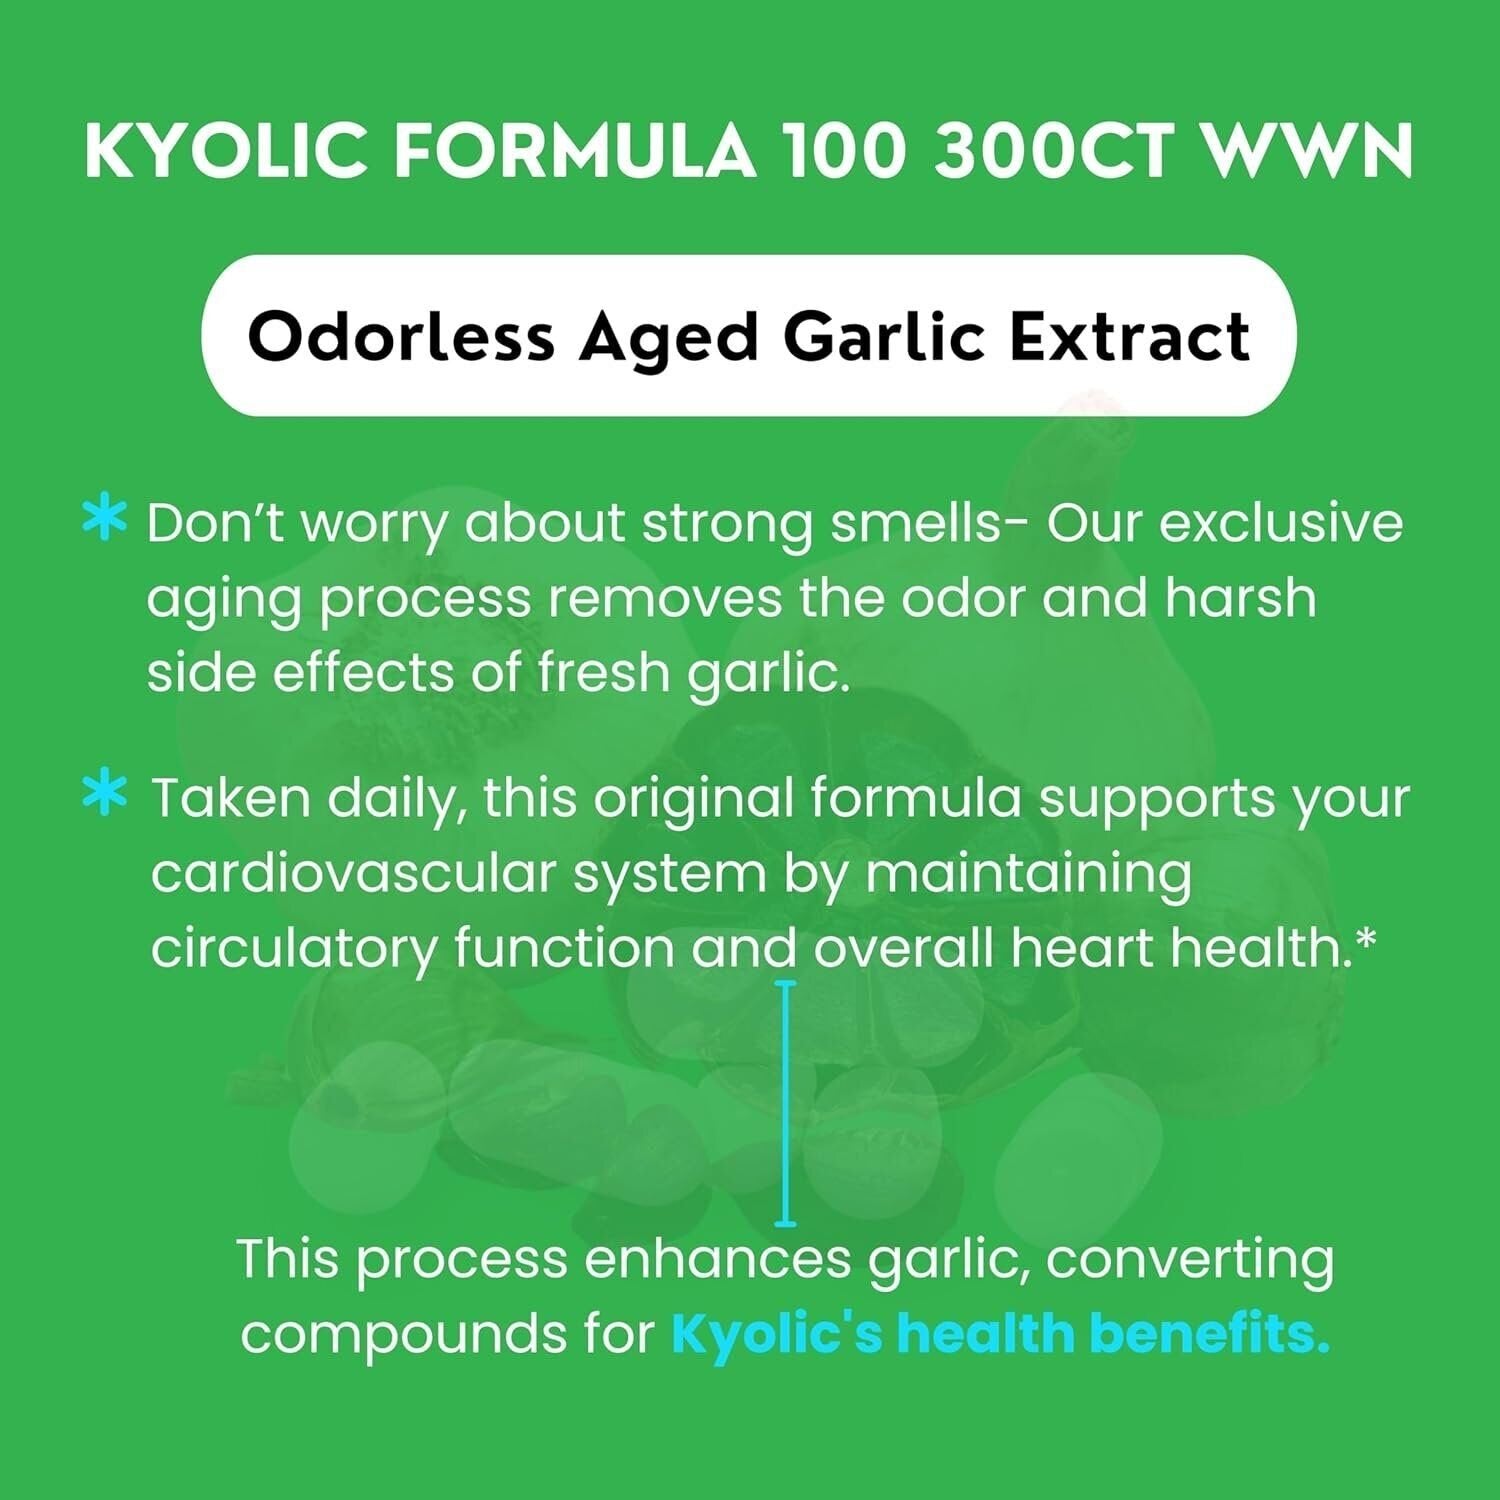 Kyolic Aged Garlic Extract Formula 100, Original Cardiovascular, 200 Capsules Packaging May Vary